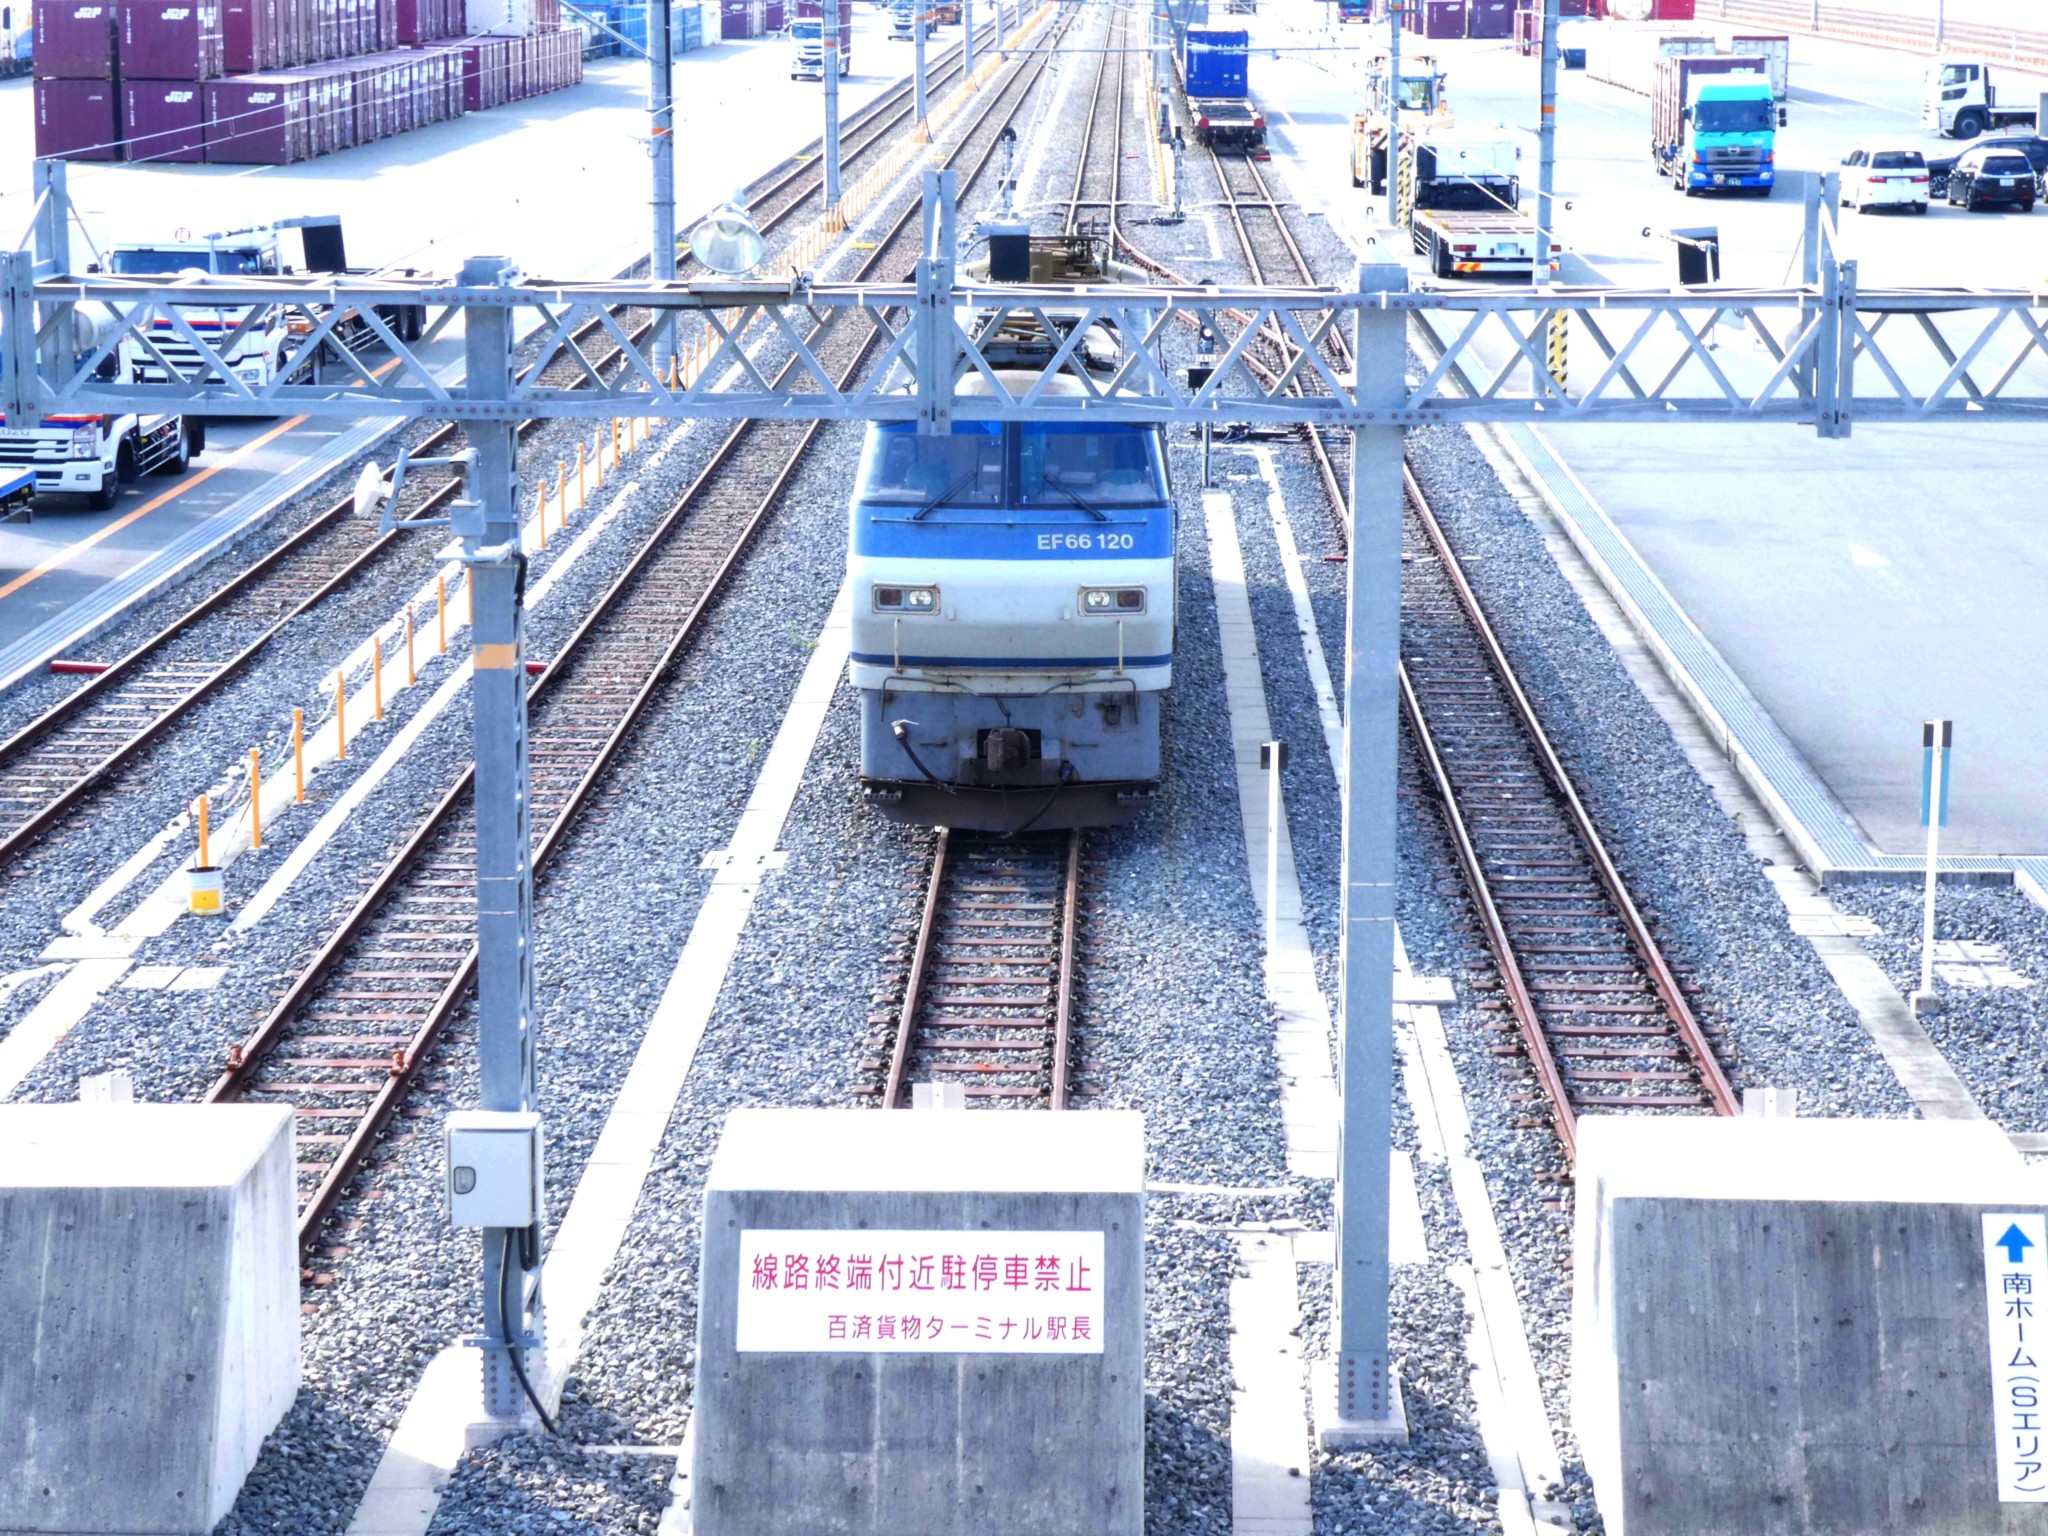 【50+】 吹田 貨物 ターミナル 駅